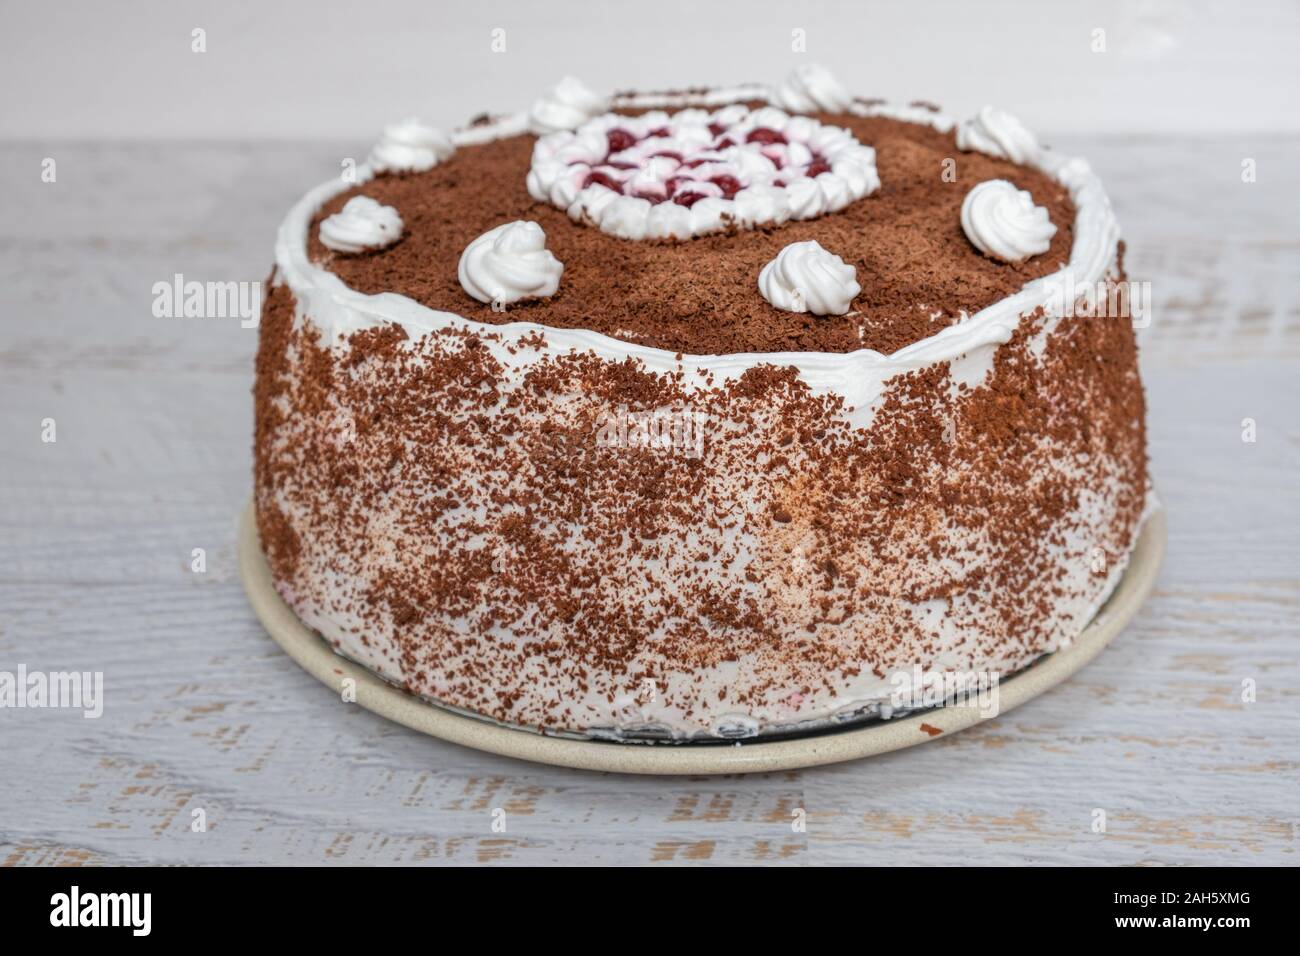 Homemade chocolate cherry cake Stock Photo